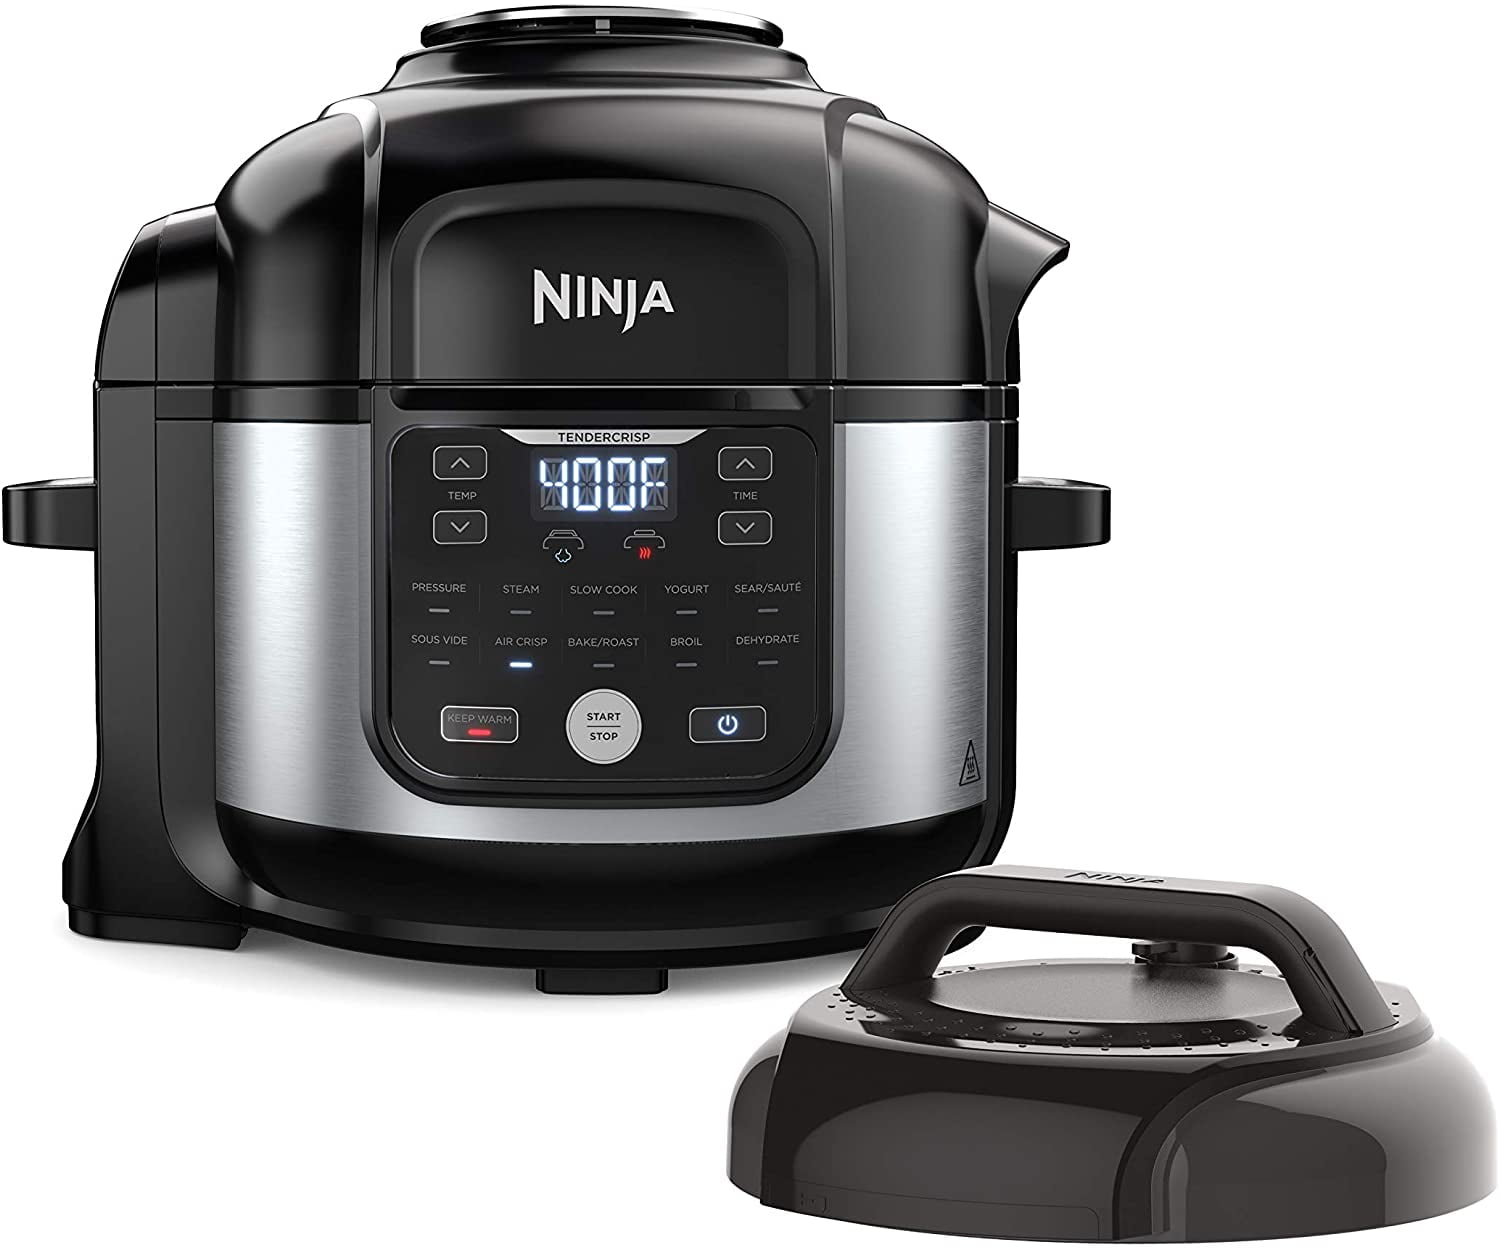 Ninja 3 in 1 Cooker – In Dianes Kitchen